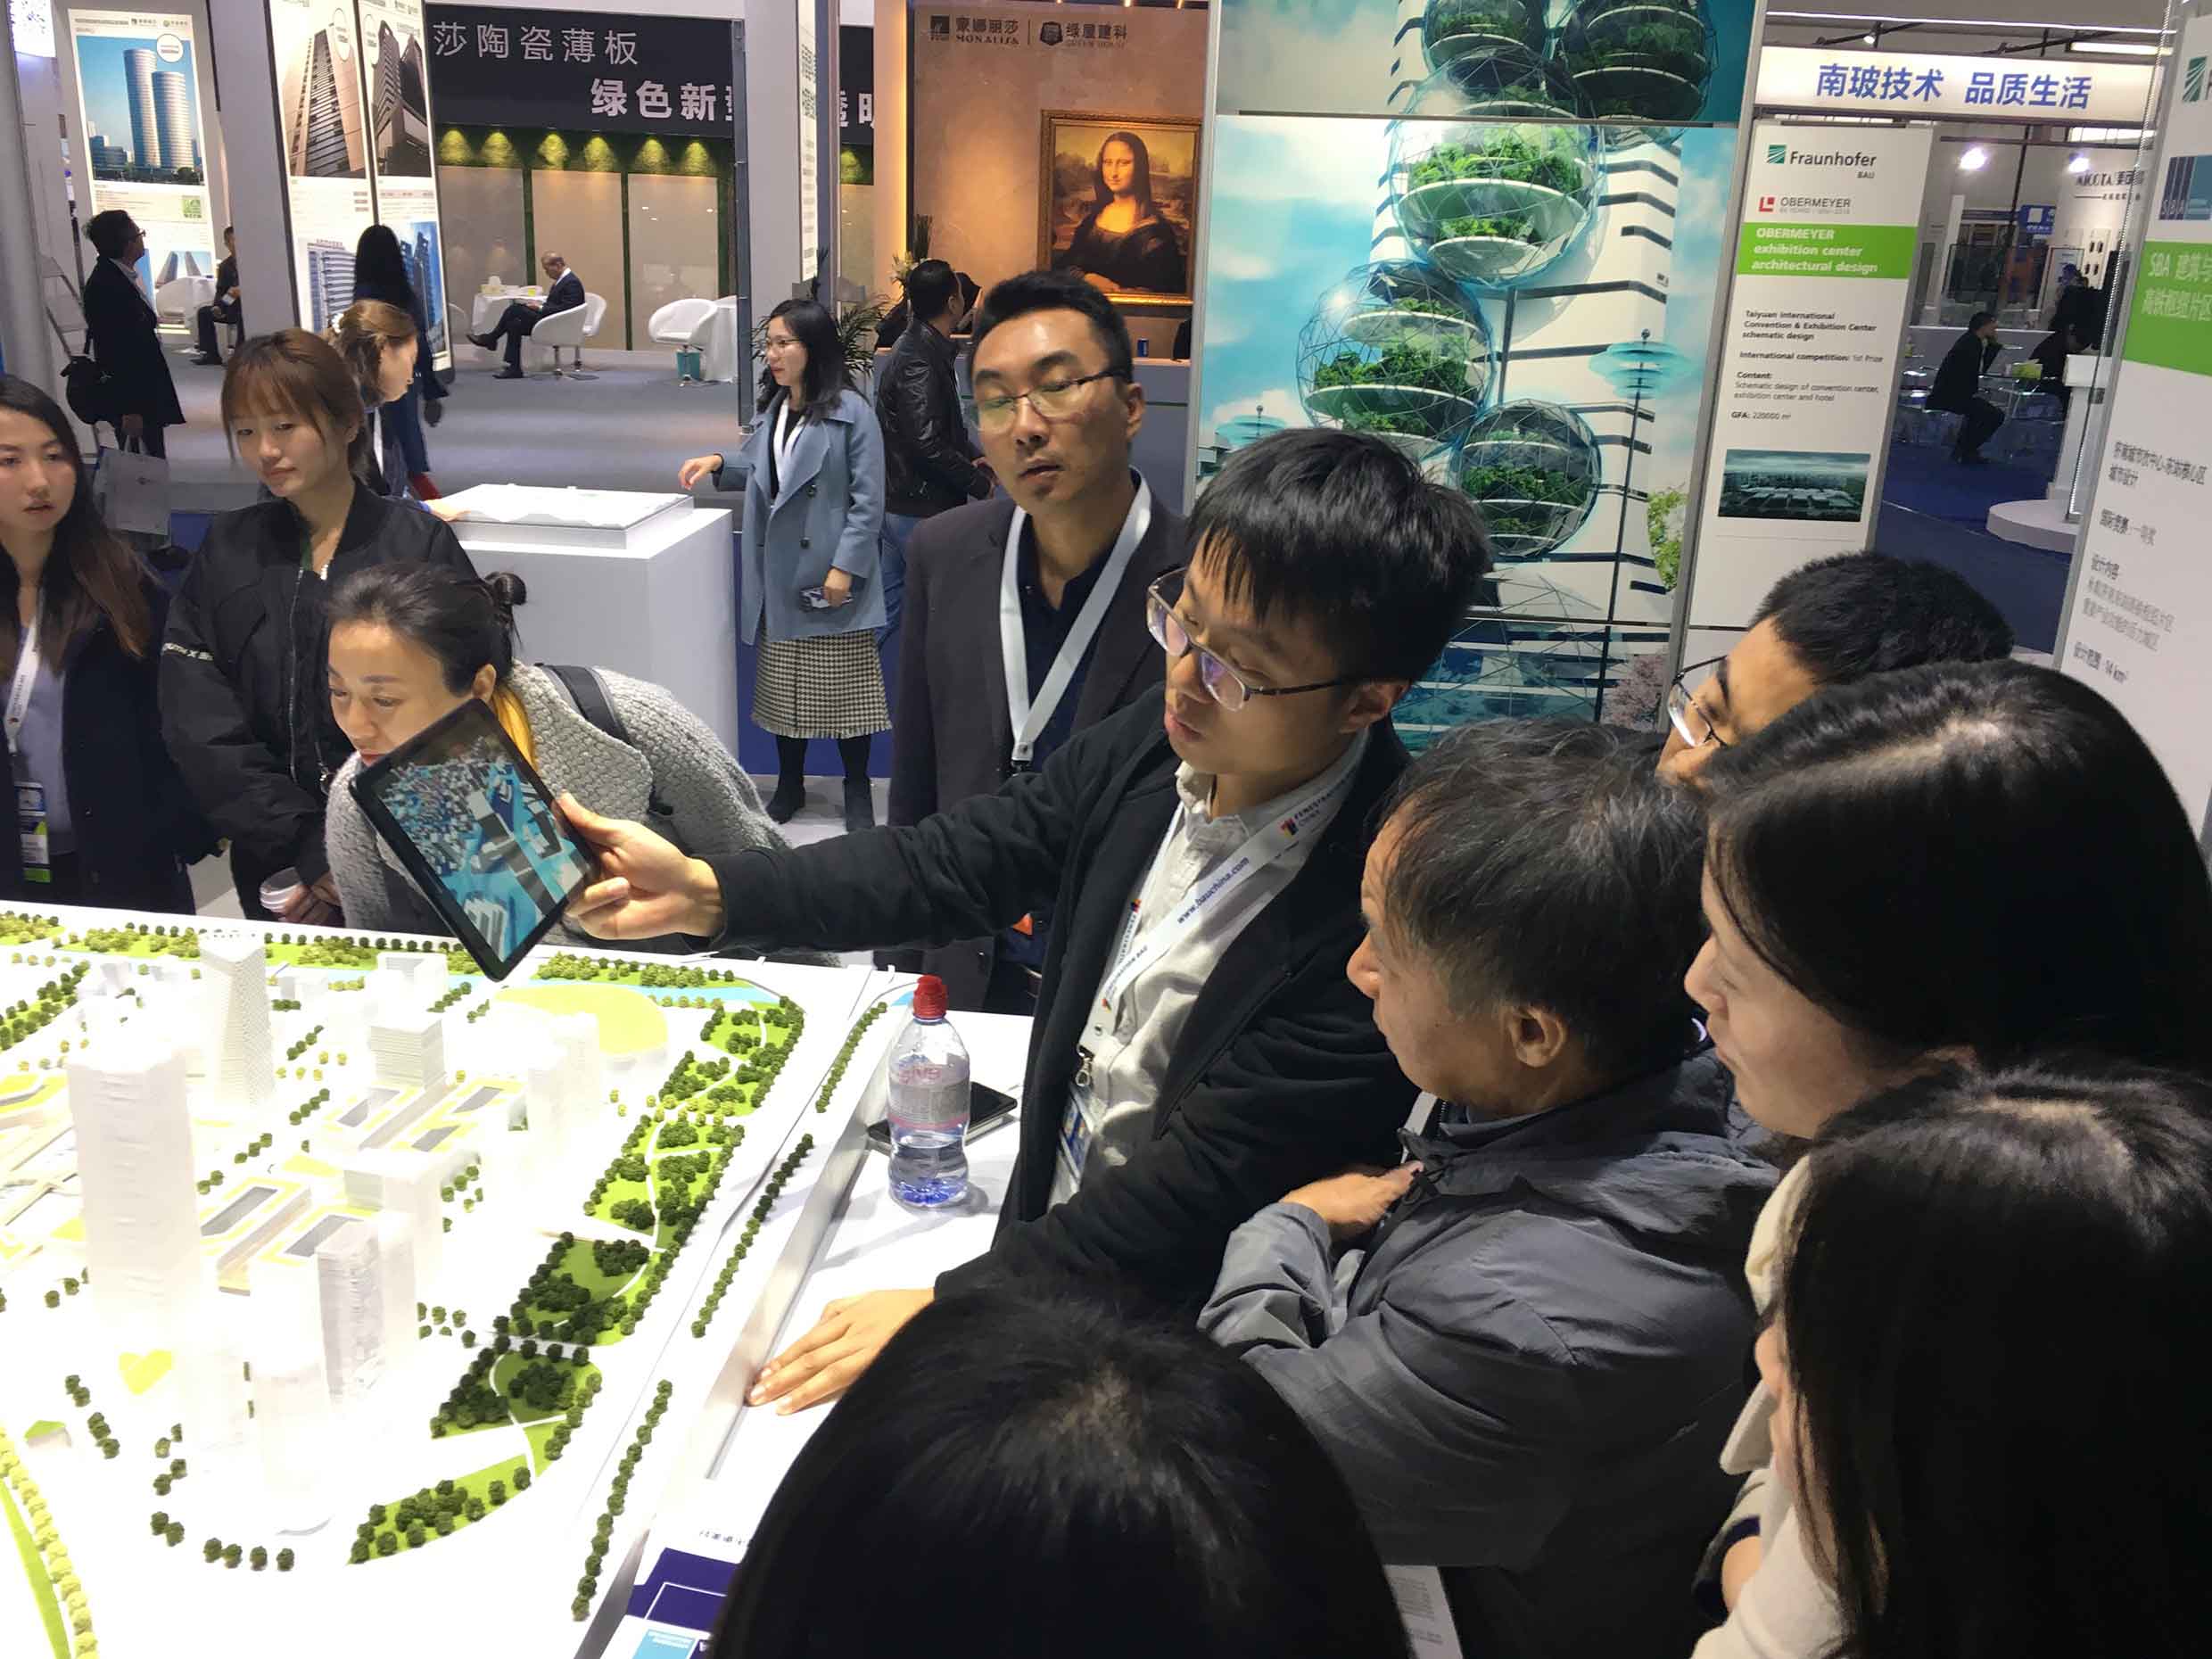 Auf Fenestration BAU China ausgestelltes interaktives Stadtmodell